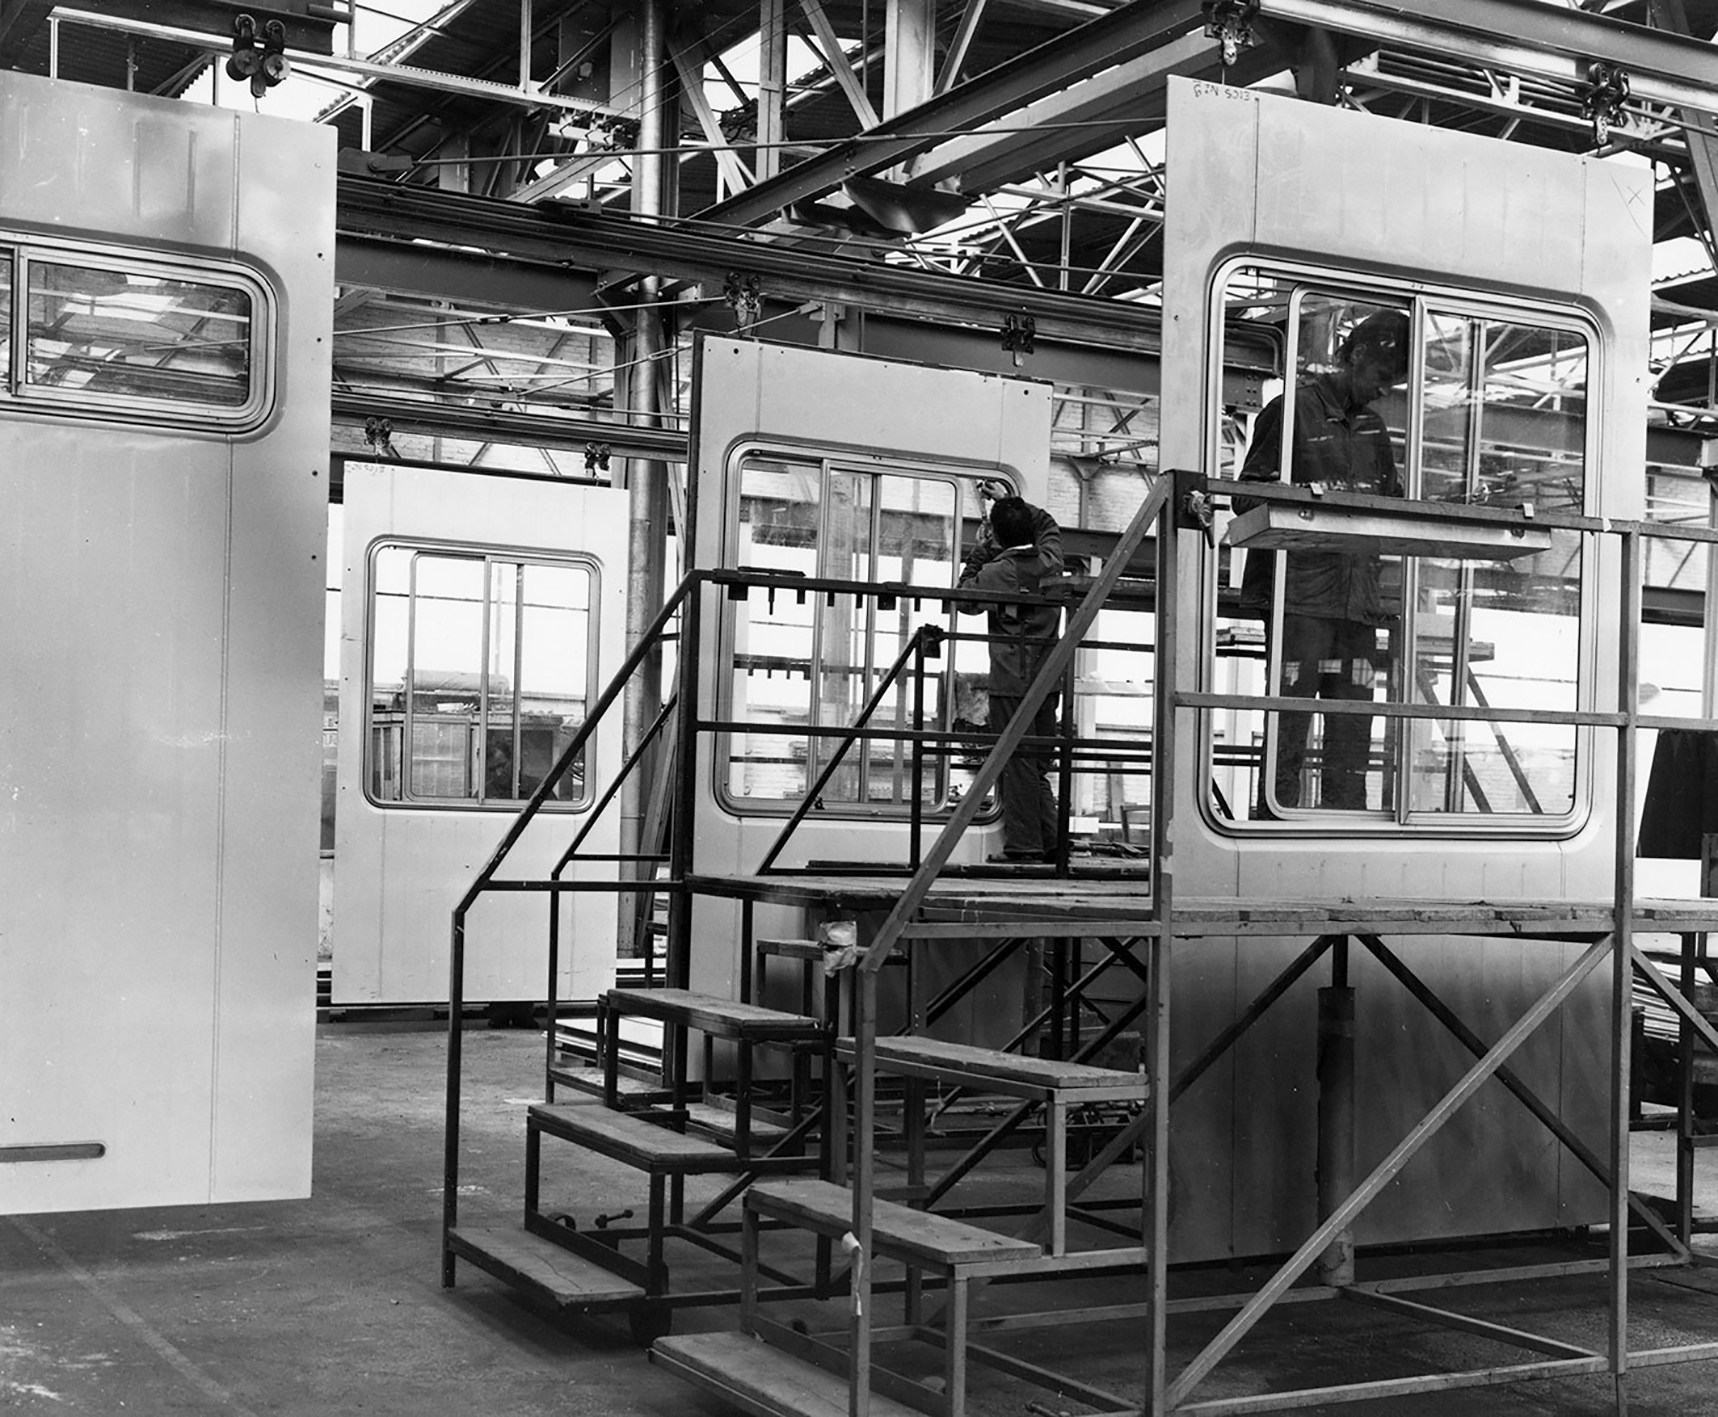 CIMT plant, Valenciennes. Assembling the panels designed by Jean Prouvé, 1963.